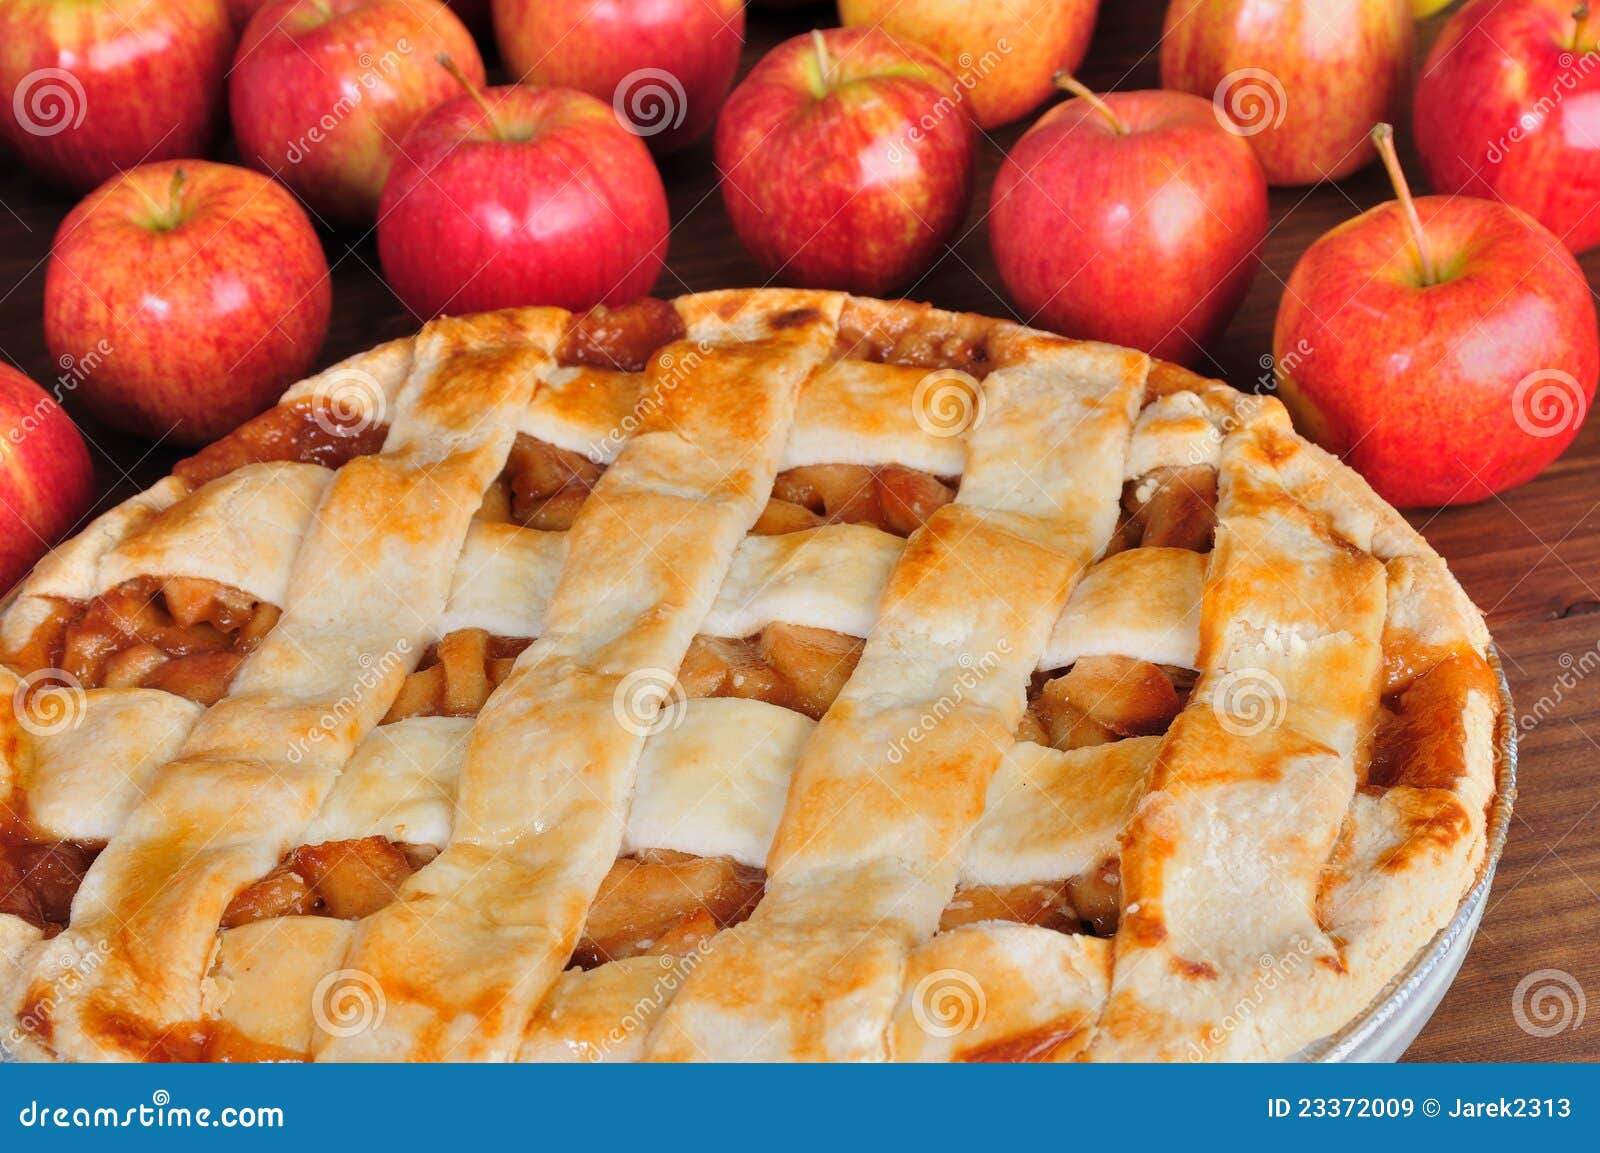 round apple pie